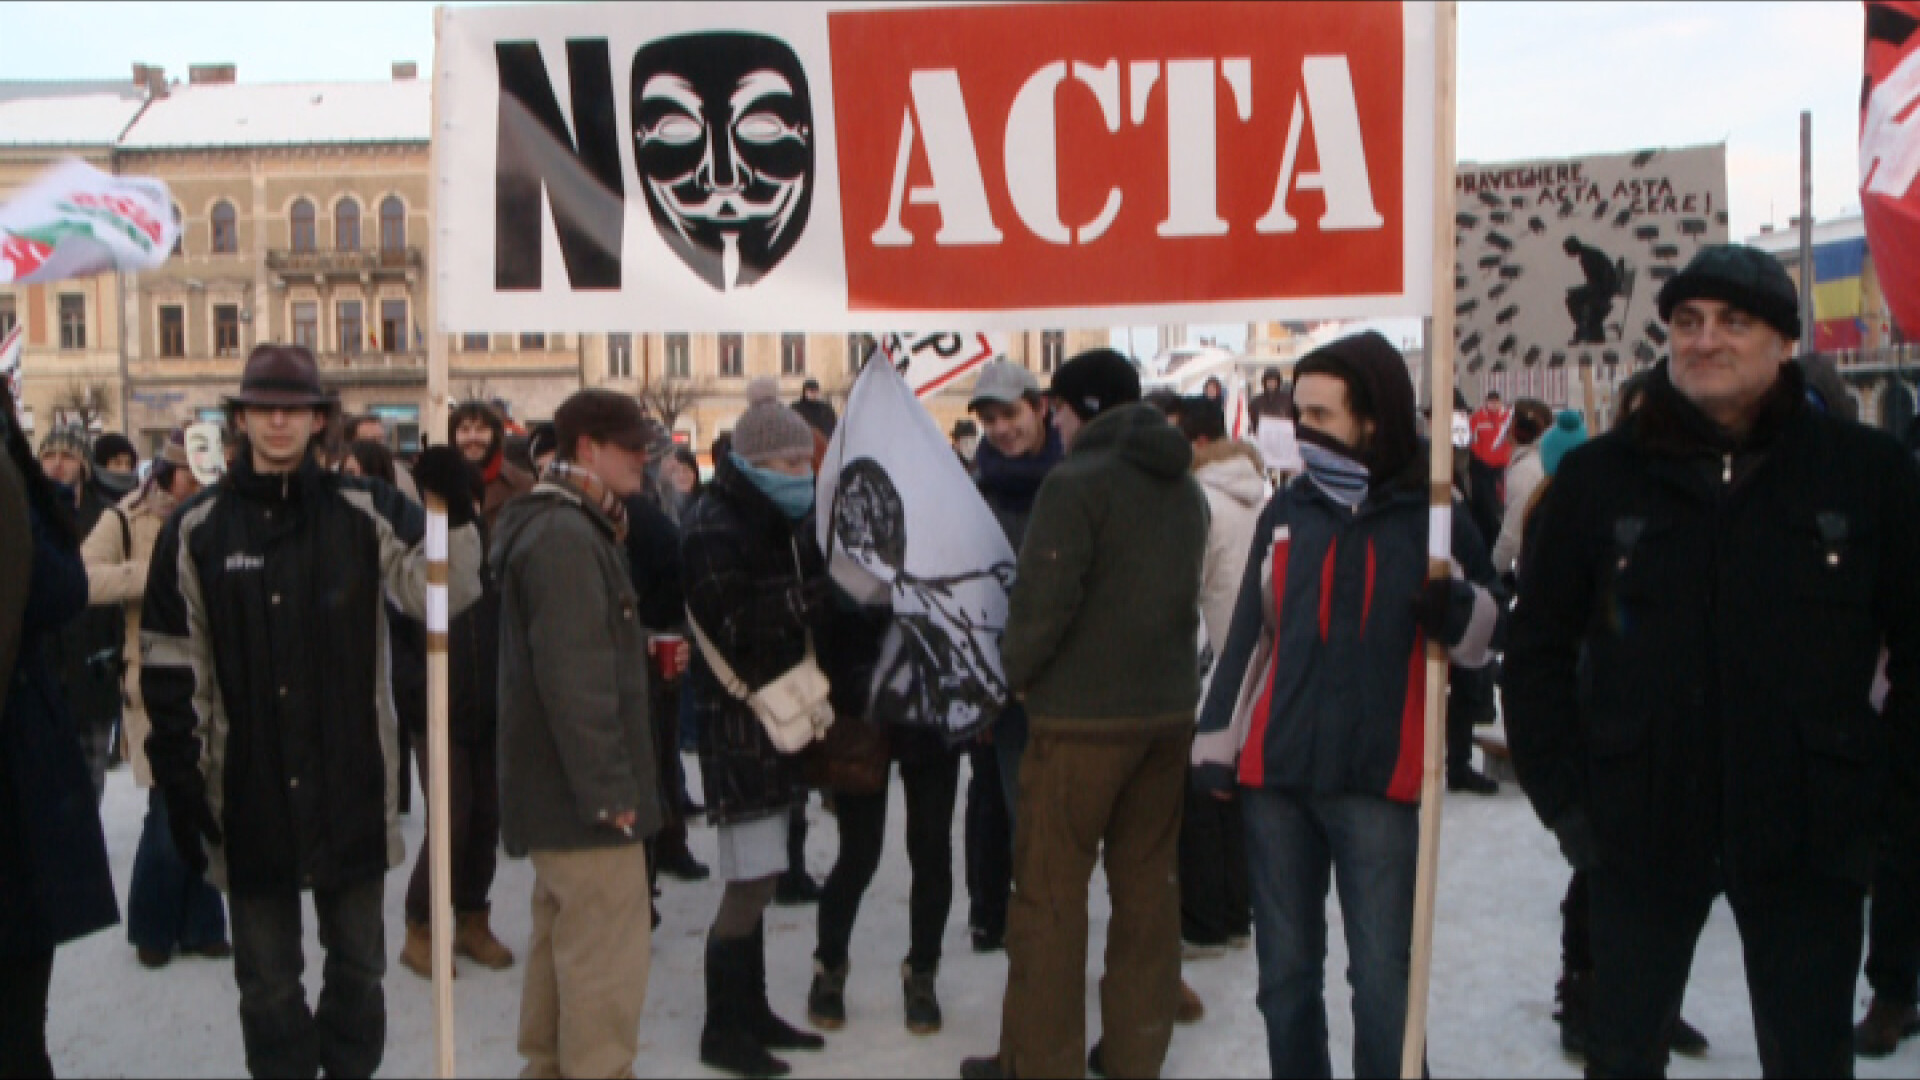 ACTA Cluj